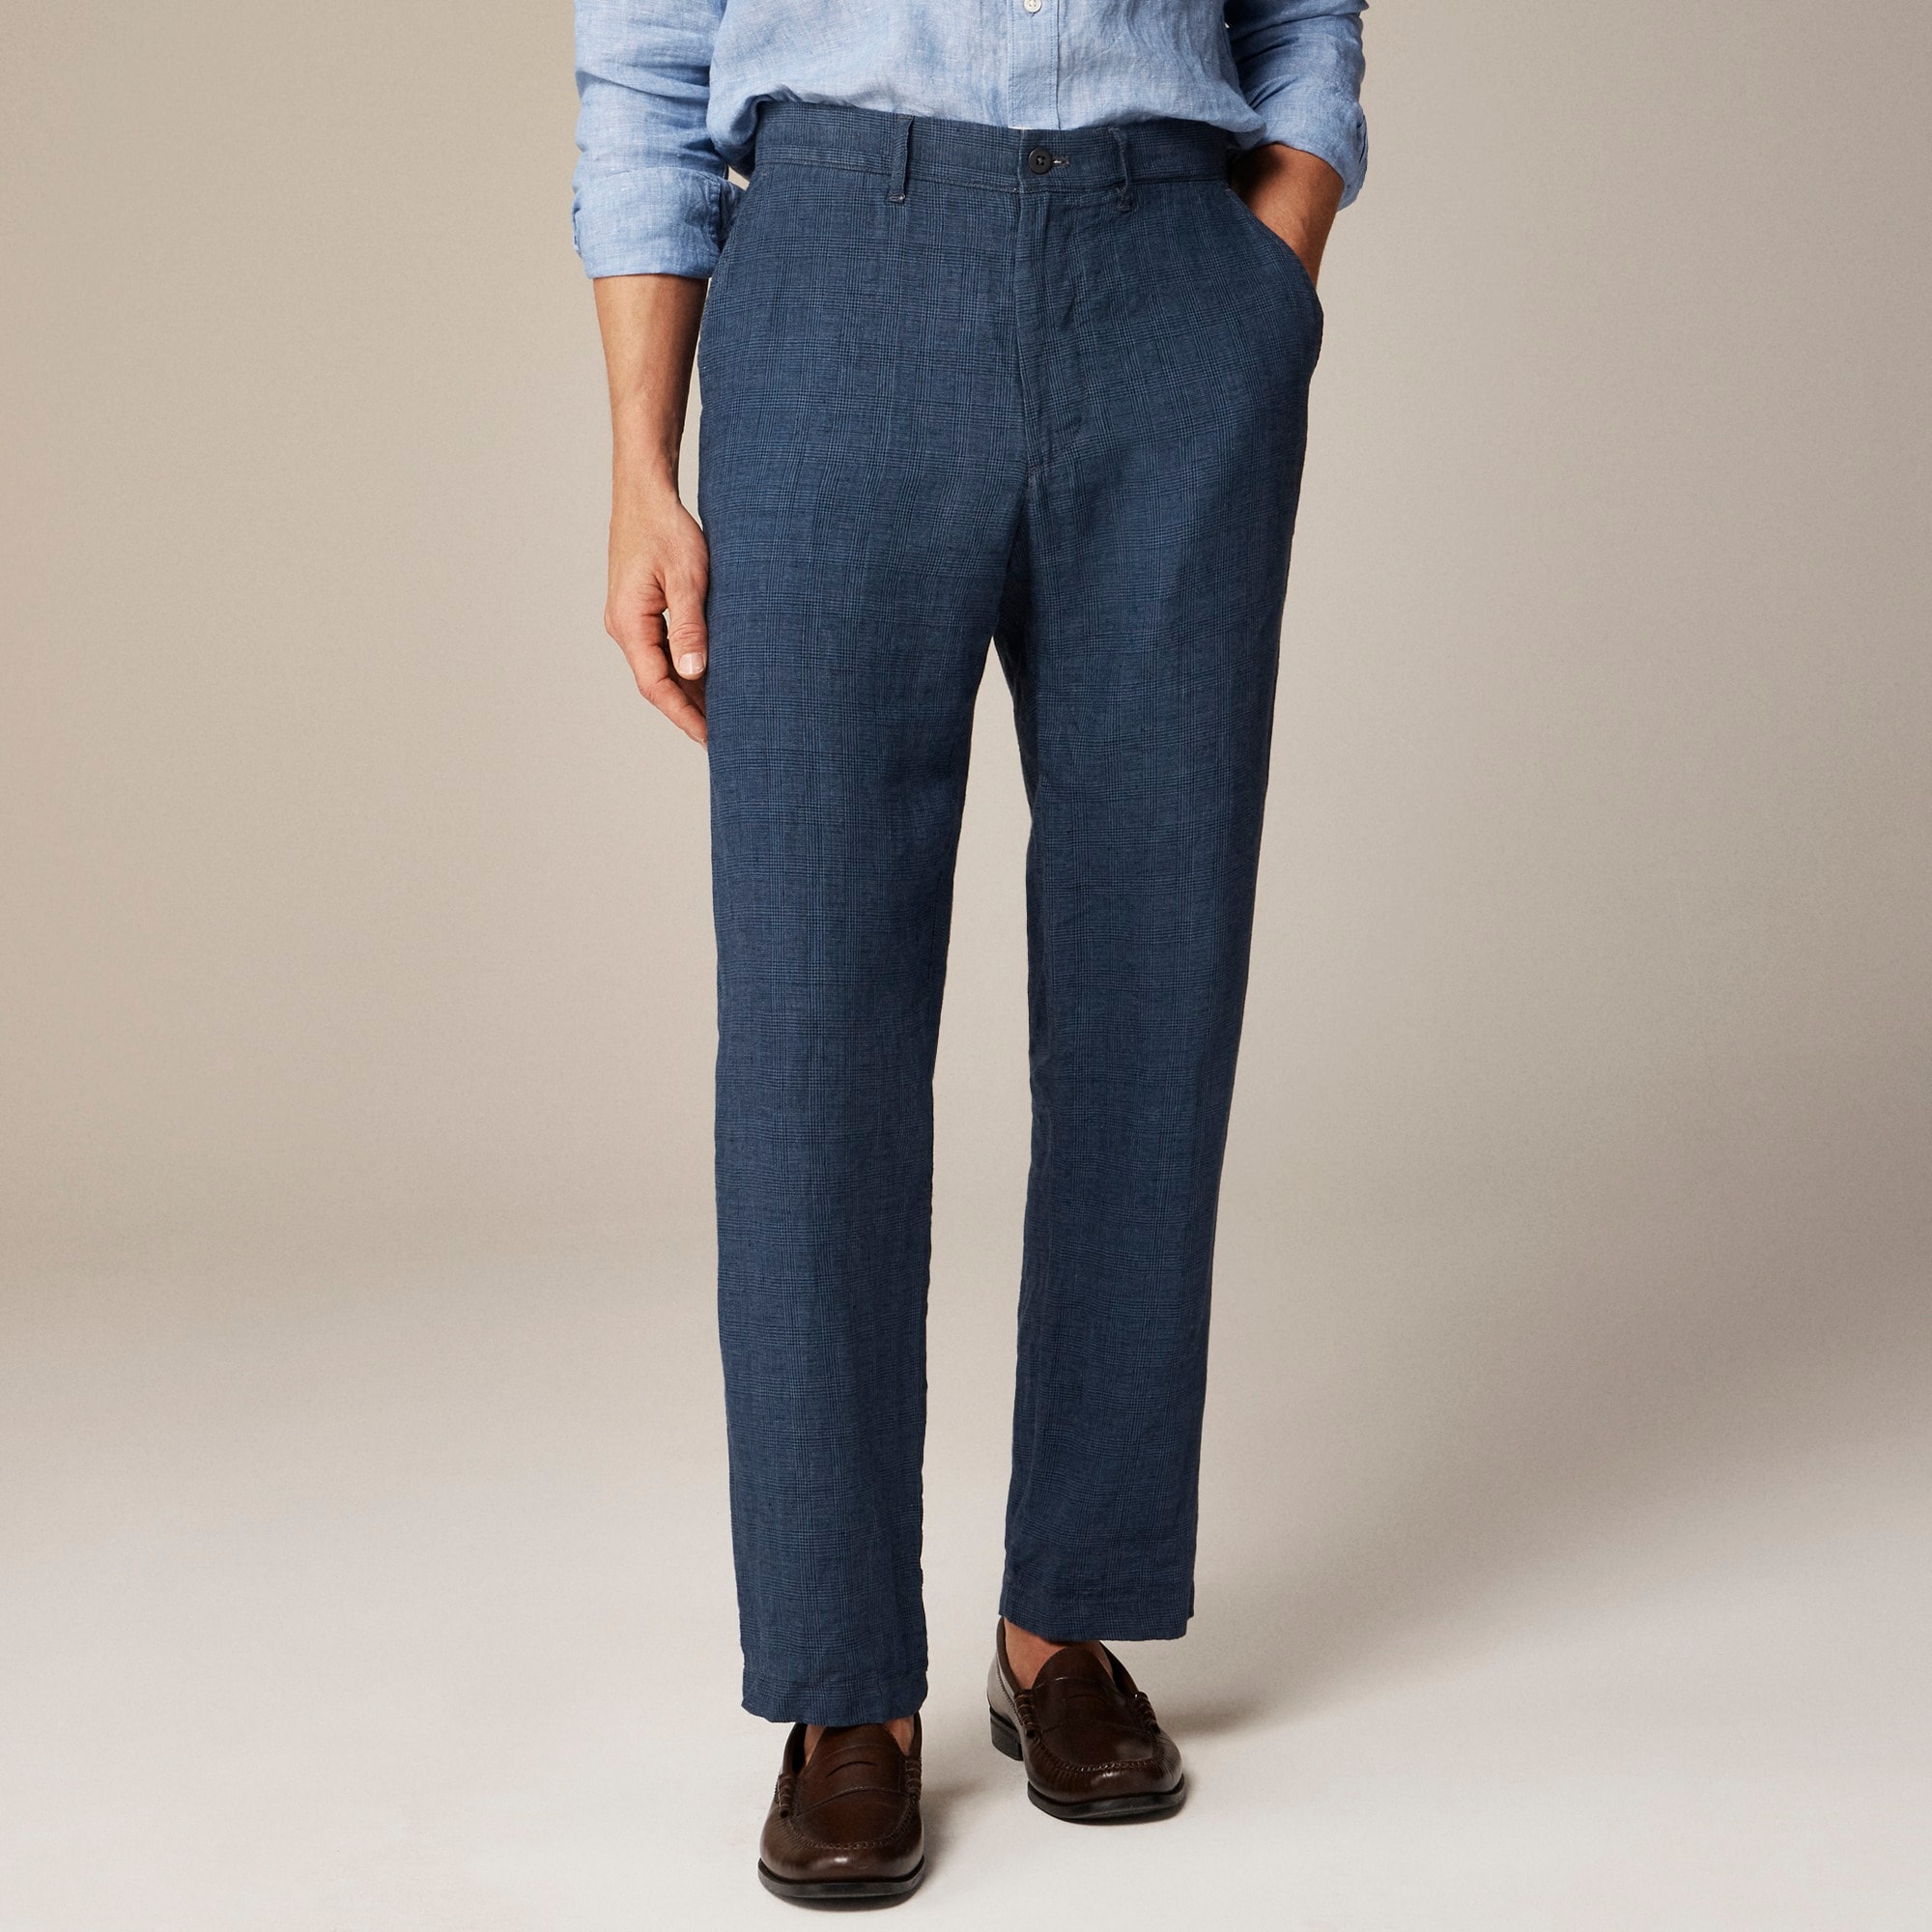  Classic-fit linen trouser